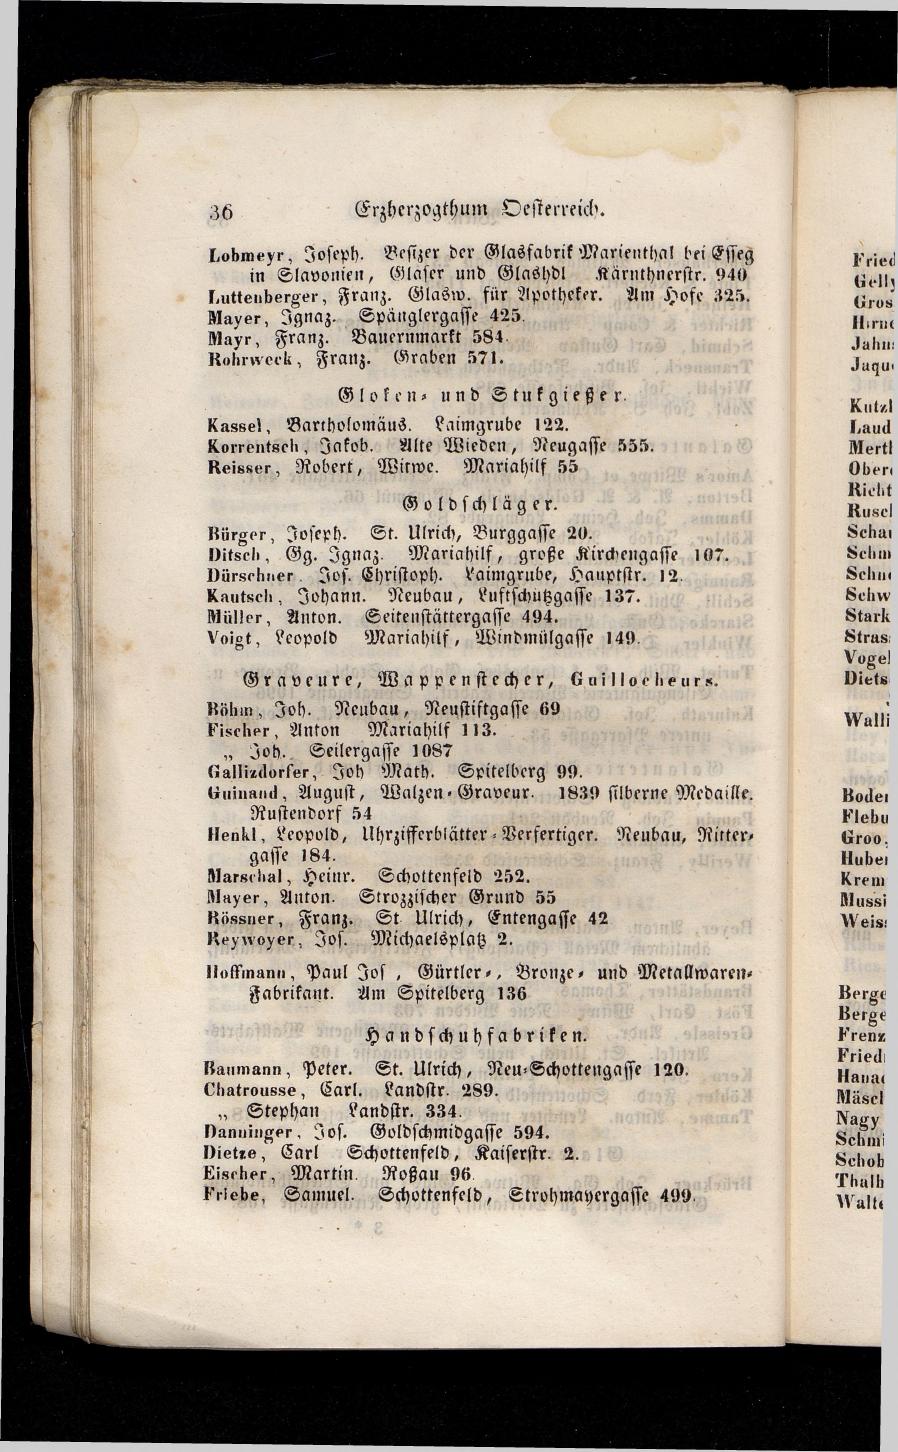 Grosses Adressbuch der Kaufleute. No. 13. Oesterreich ober u. unter der Enns 1844 - Seite 40